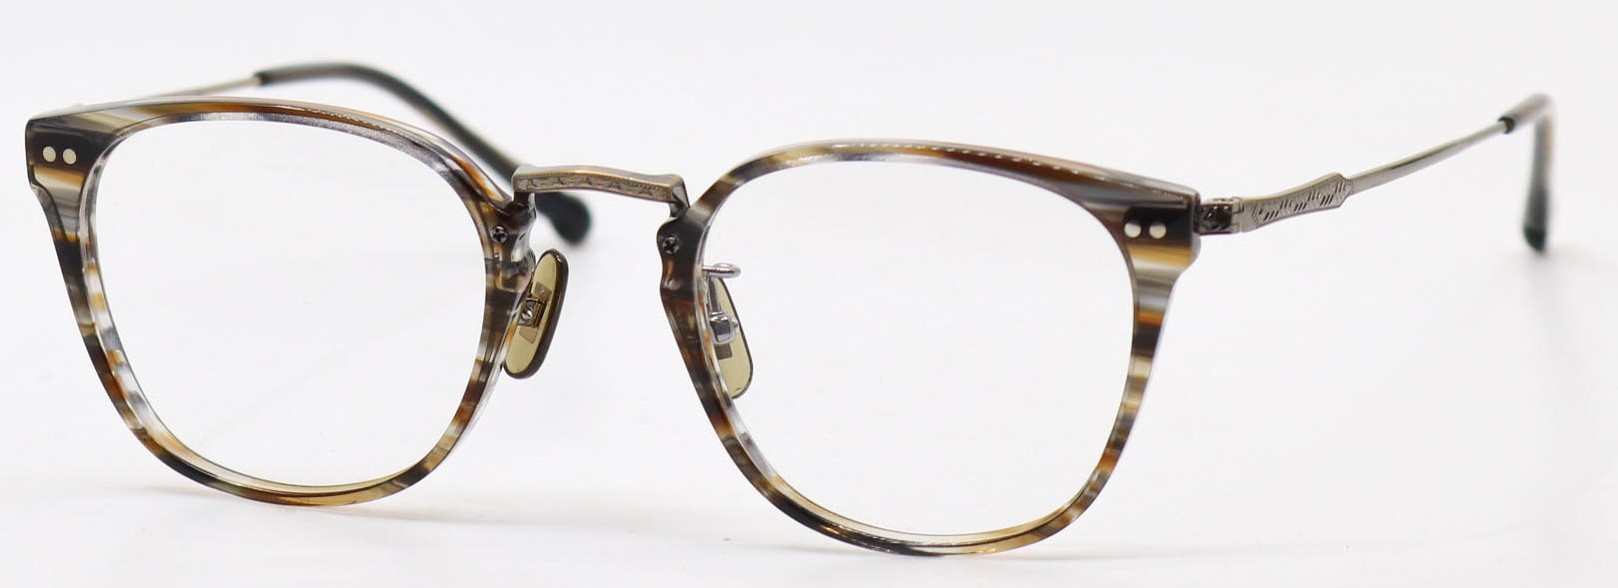 眼鏡のカラータイプC-2 Brown-Sasa/At-Gold